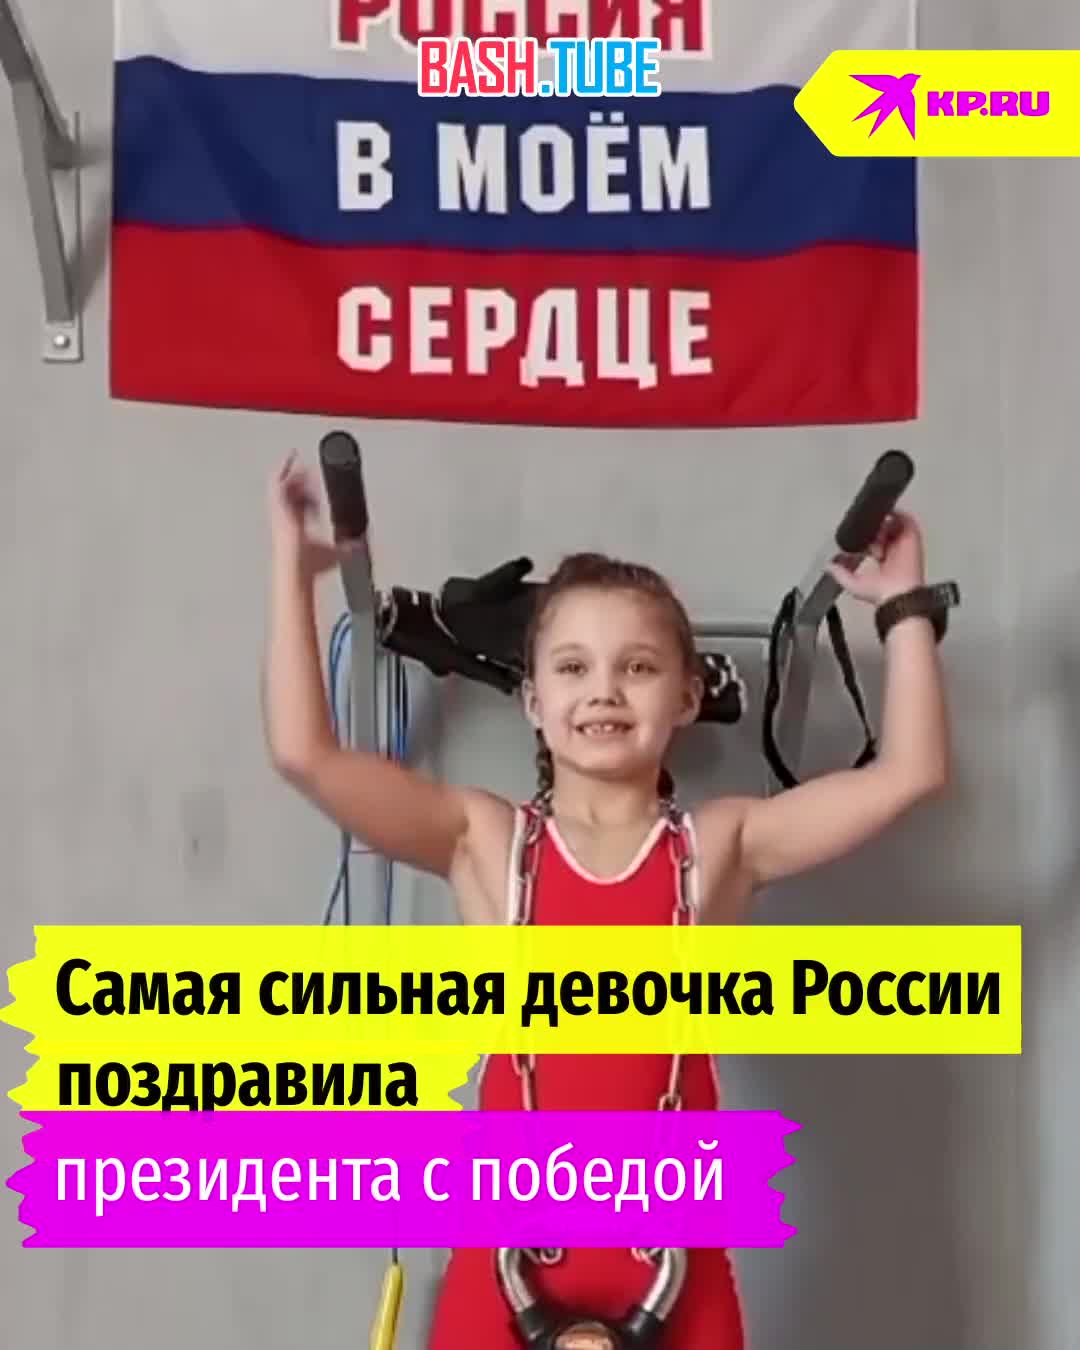  Самая сильная девочка России из Перми Лида Котельникова поздравила Владимира Путина с победой на выборах